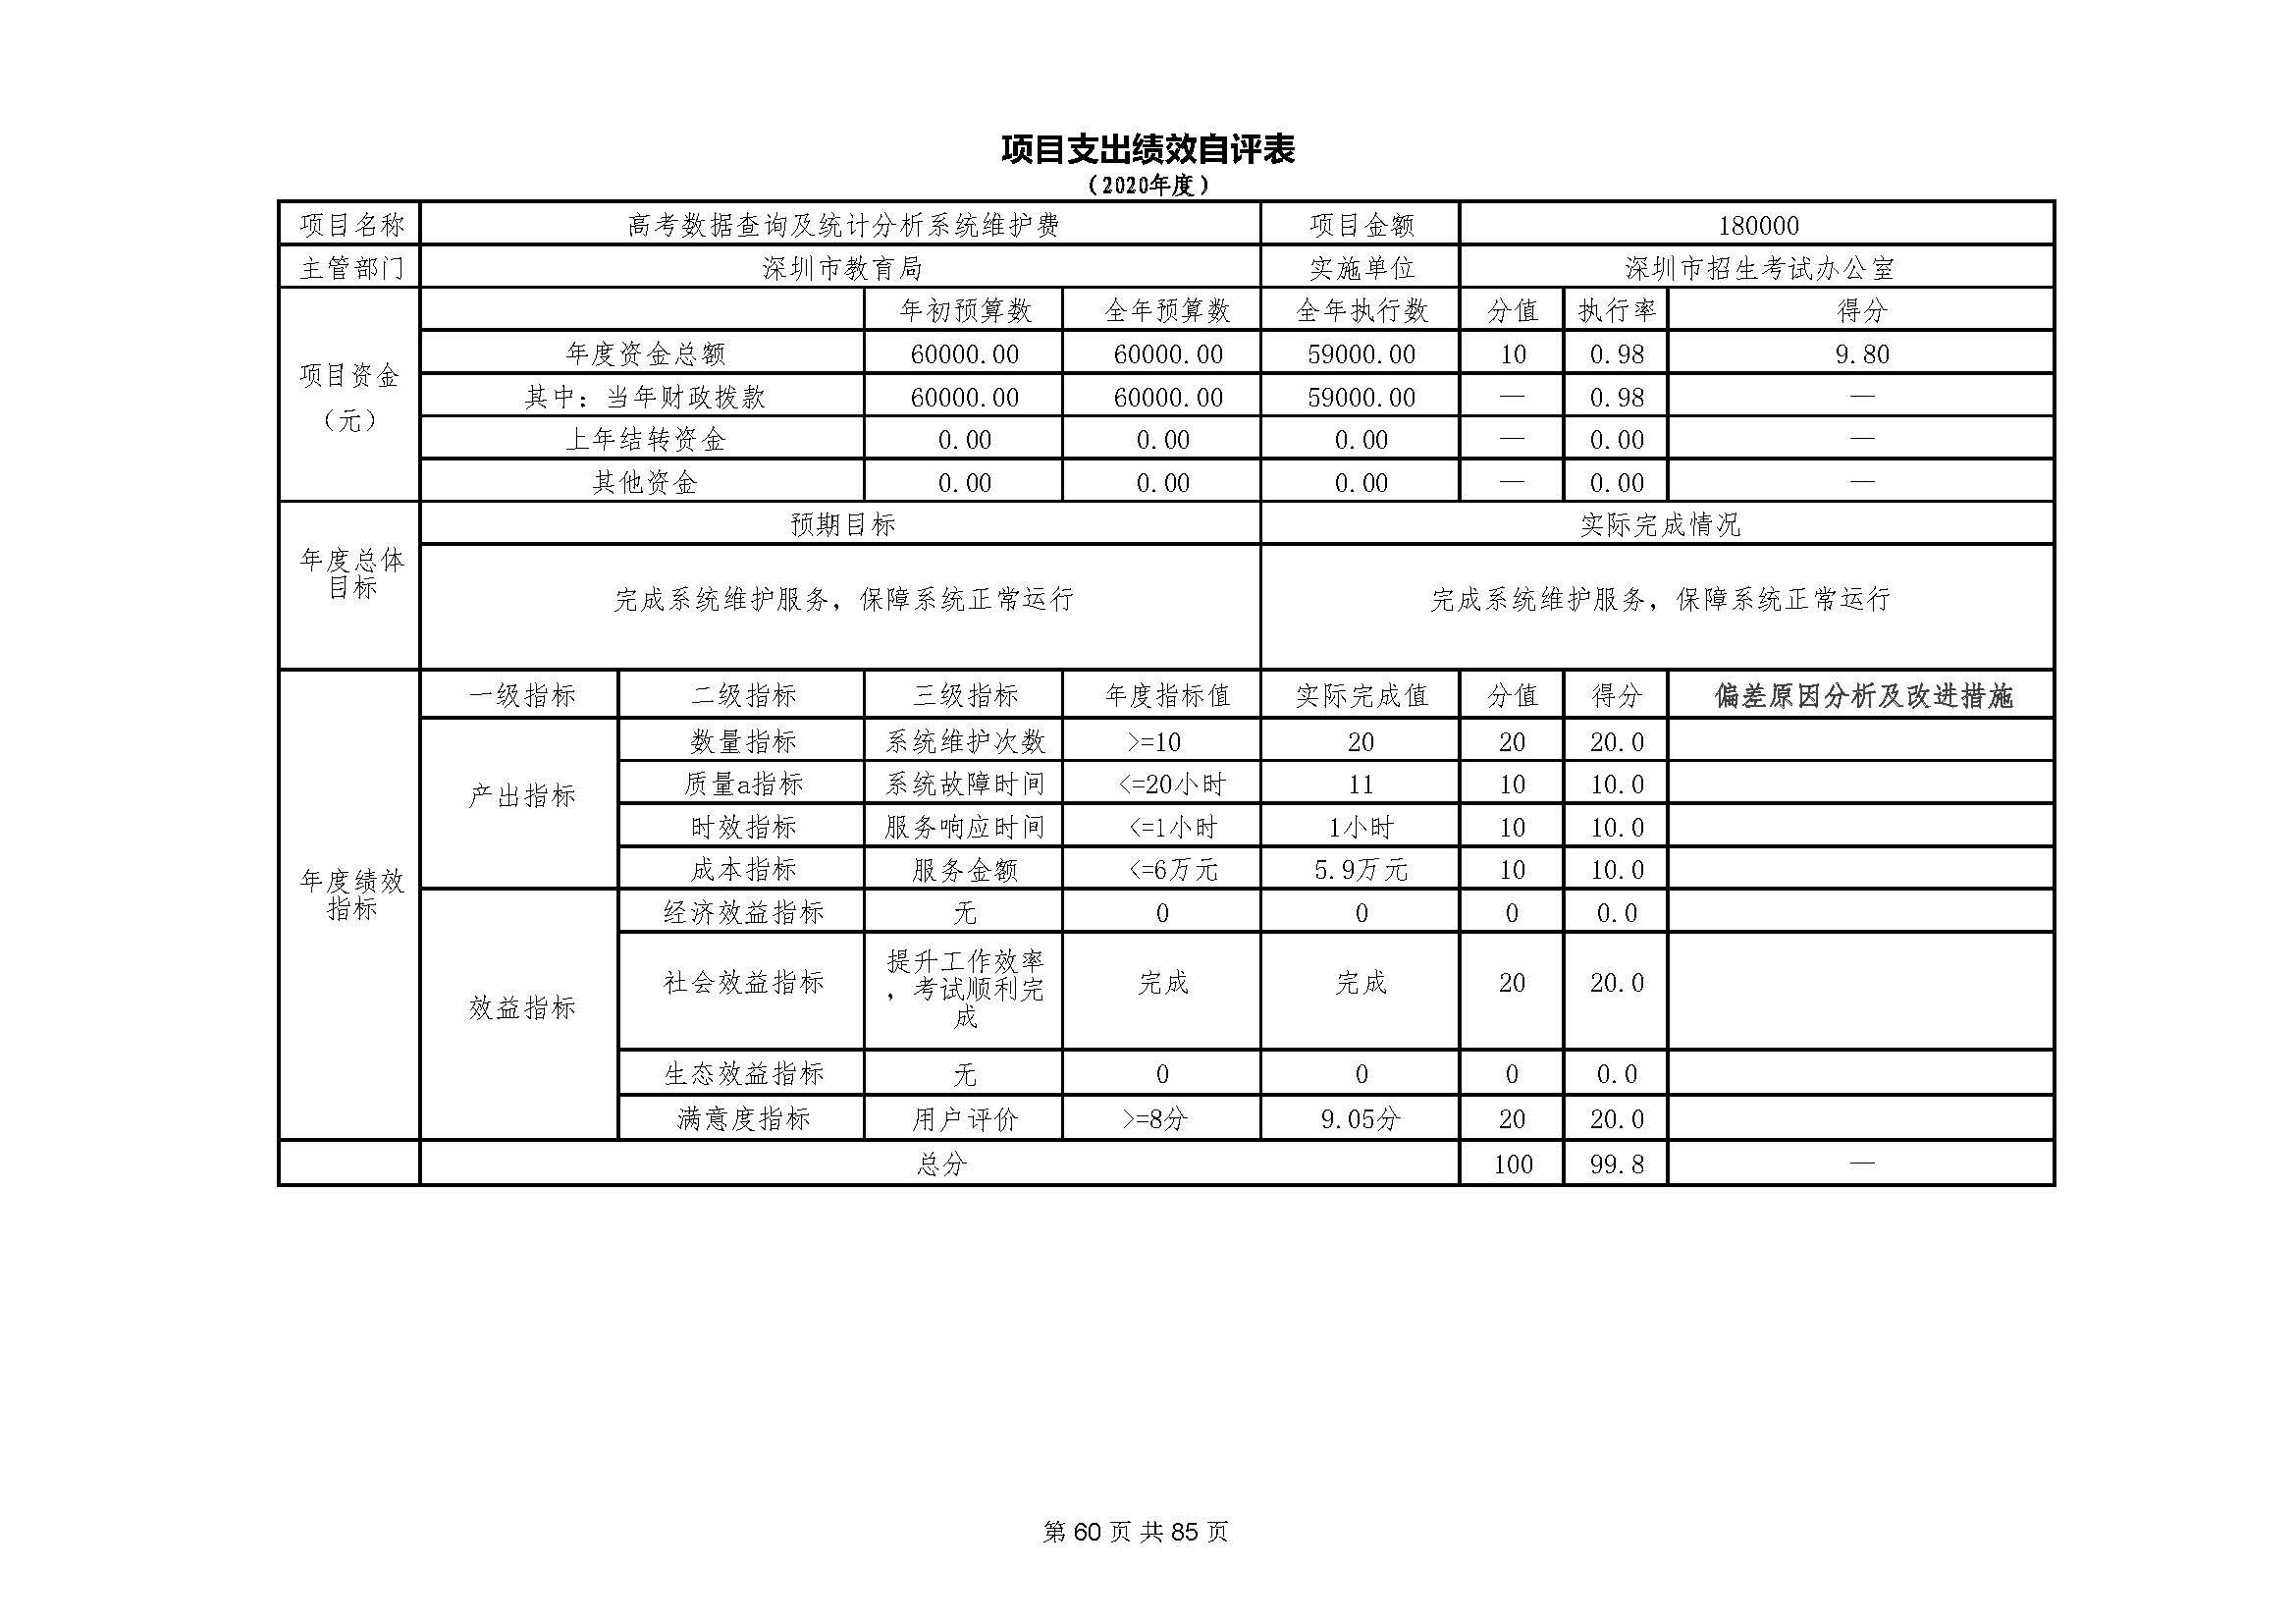 深圳市招生考试办公室2020年度部门决算_页面_61.jpg